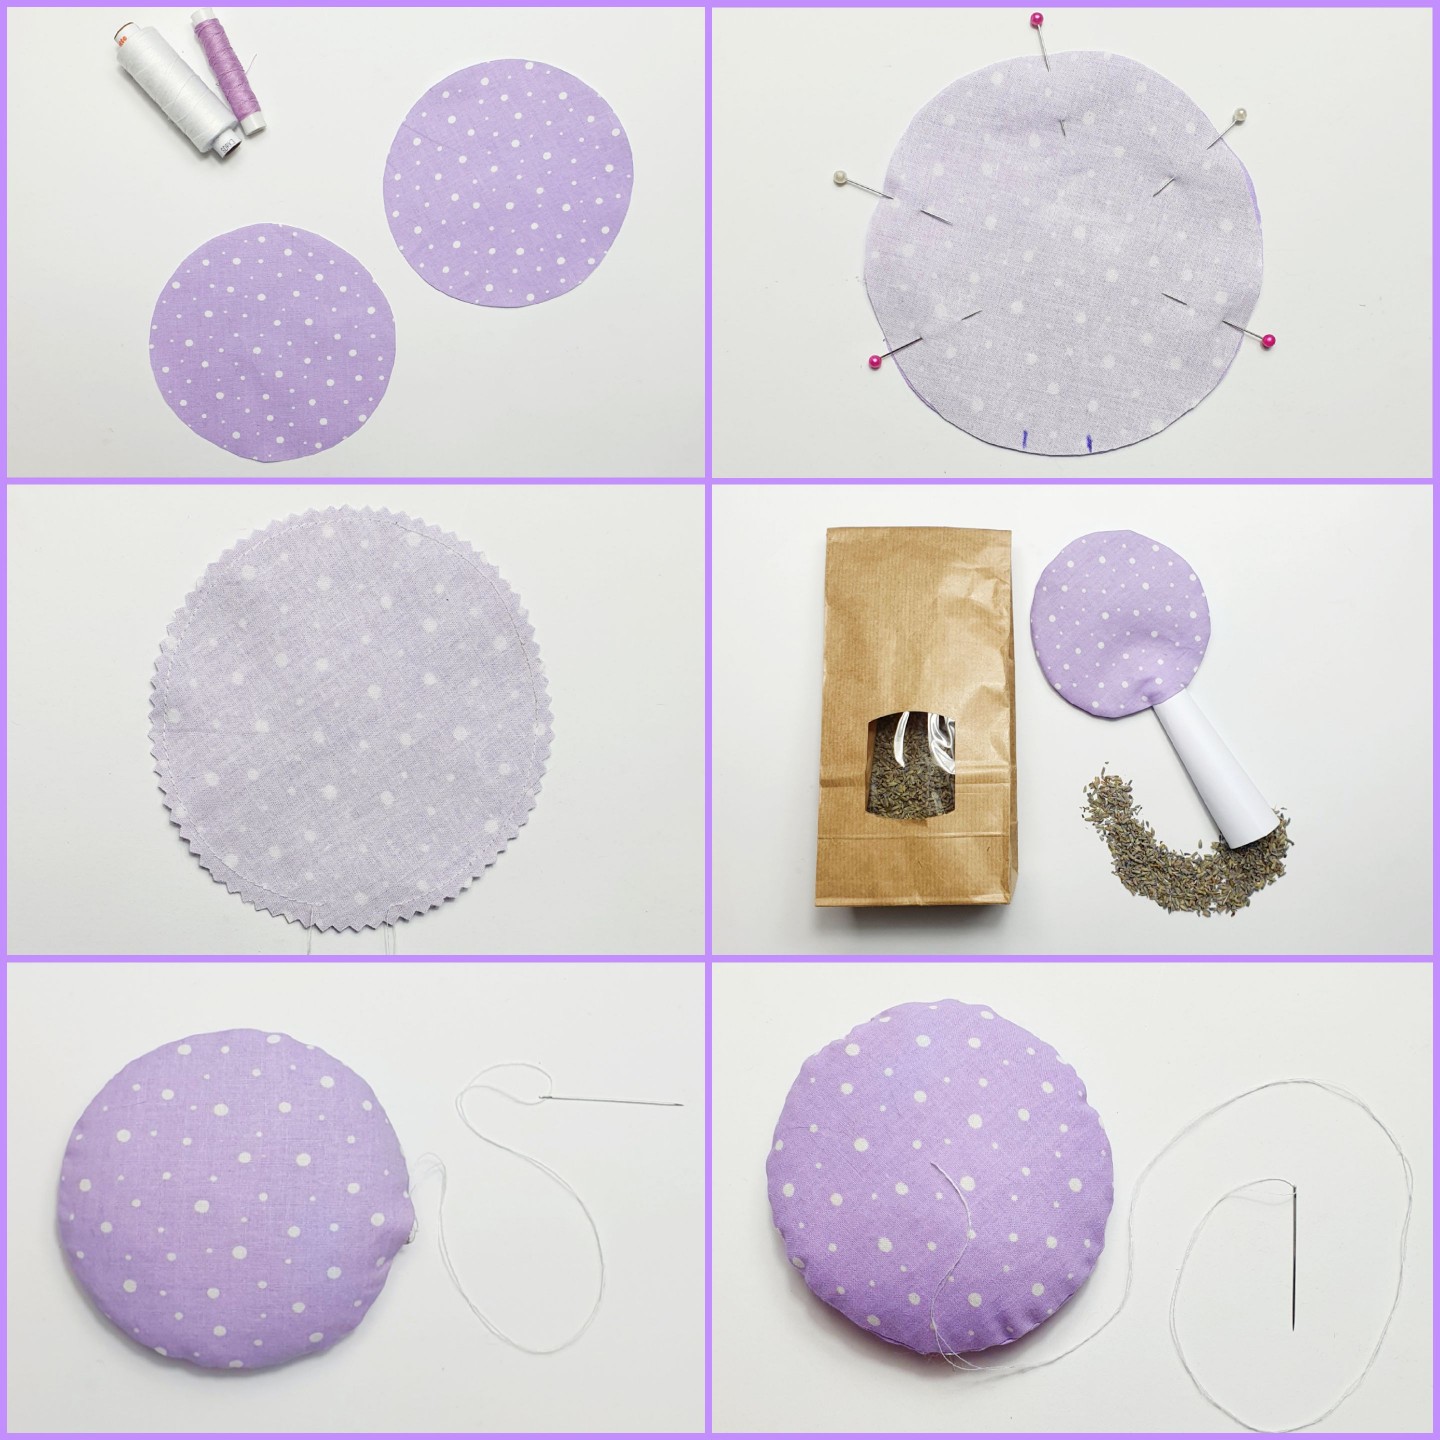 Es wird ein Stoffkreis ausgeschnitten um ein Selbstgenähtes Lavendelkissen in Blumenform herzustellen